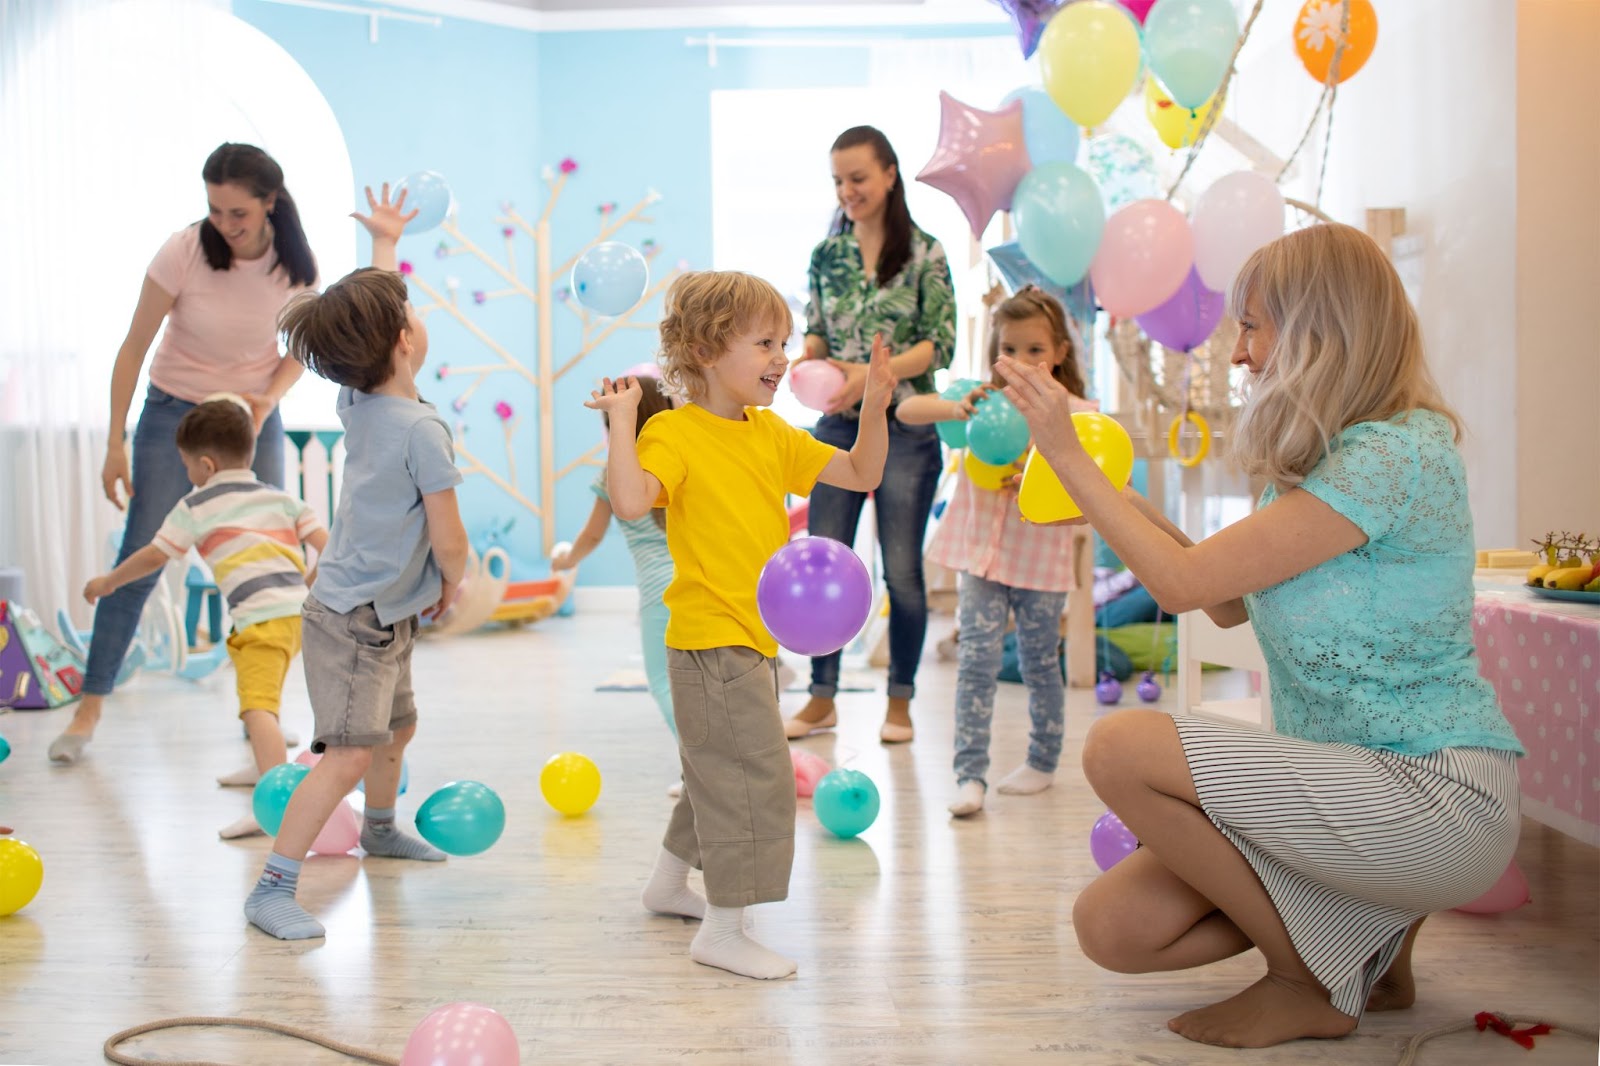 enfants et adultes jouant ensemble avec des ballons pour un anniversaire en intérieur